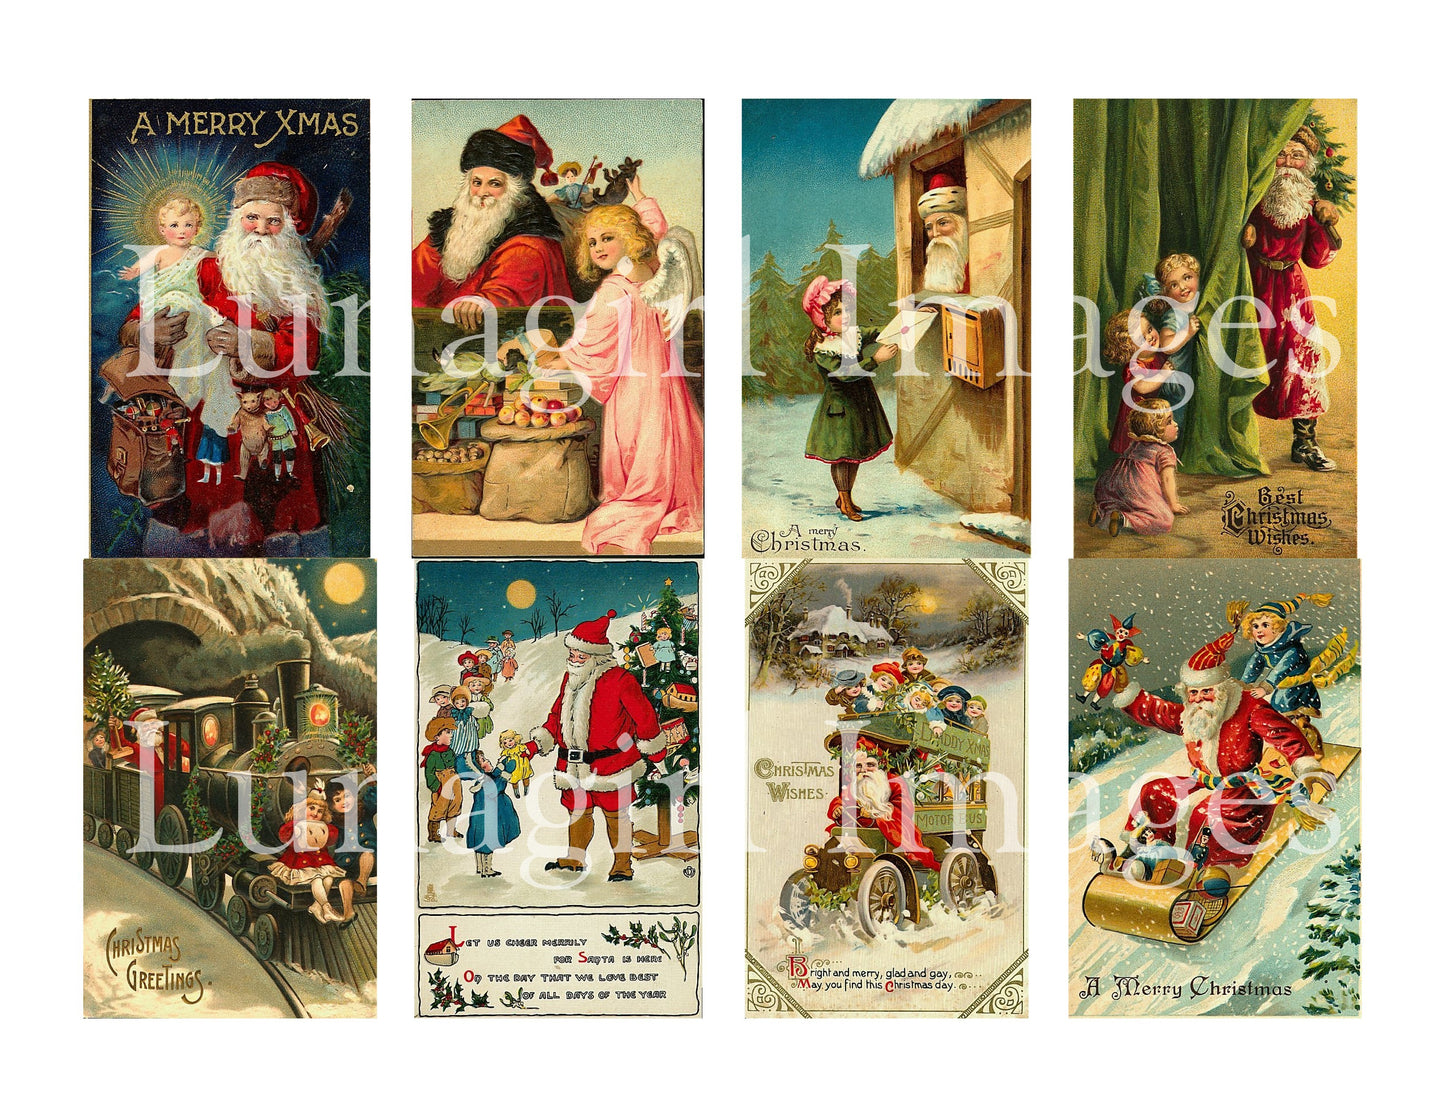 100 Santa with Children Images Download Pack - Lunagirl